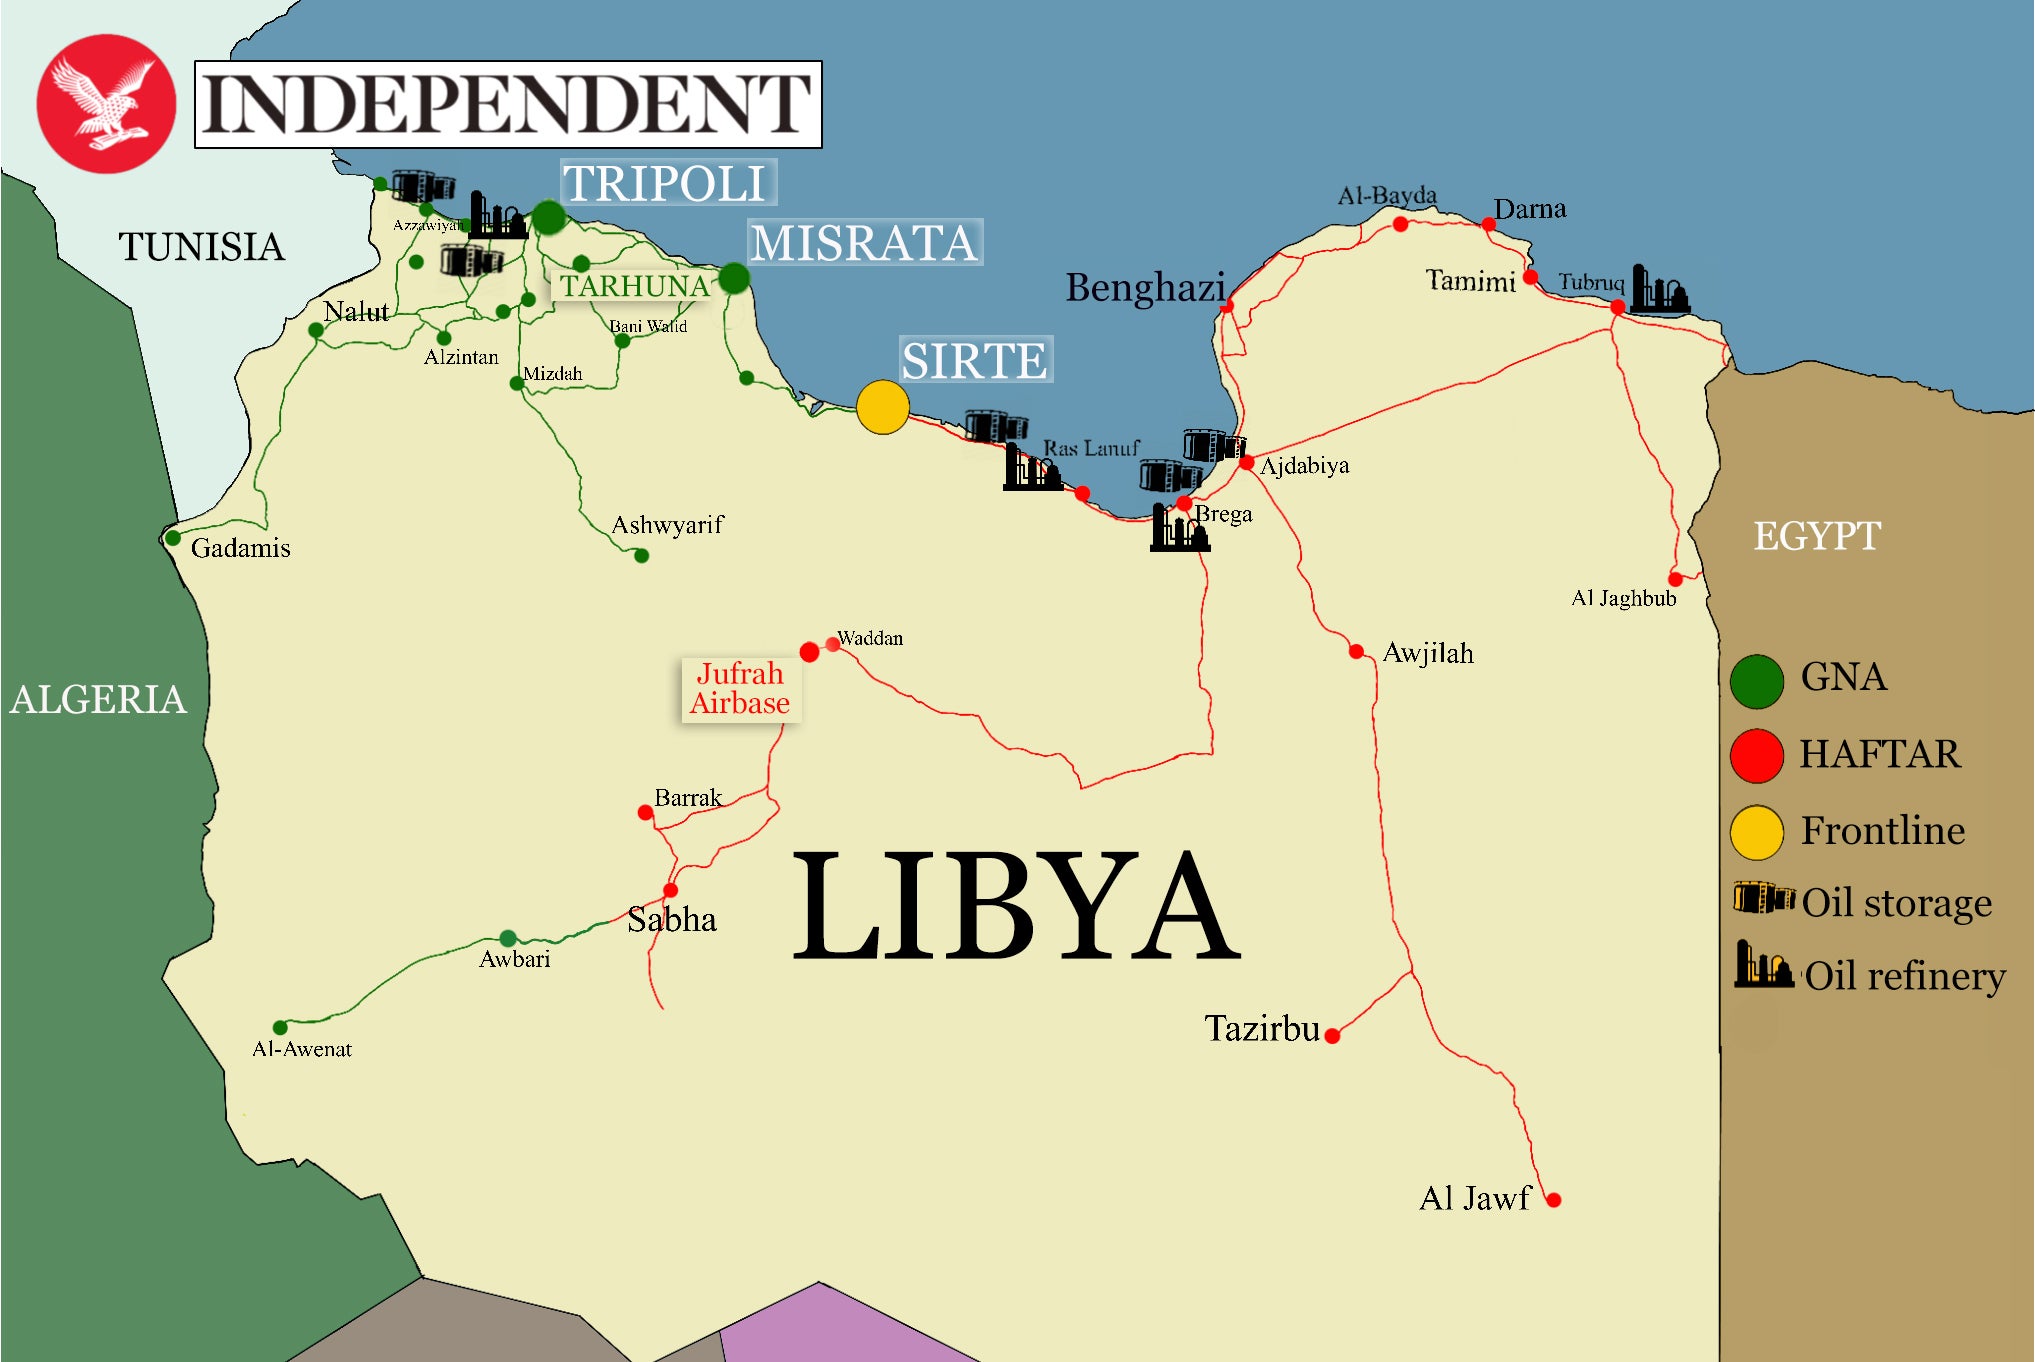 Libya's faultlines